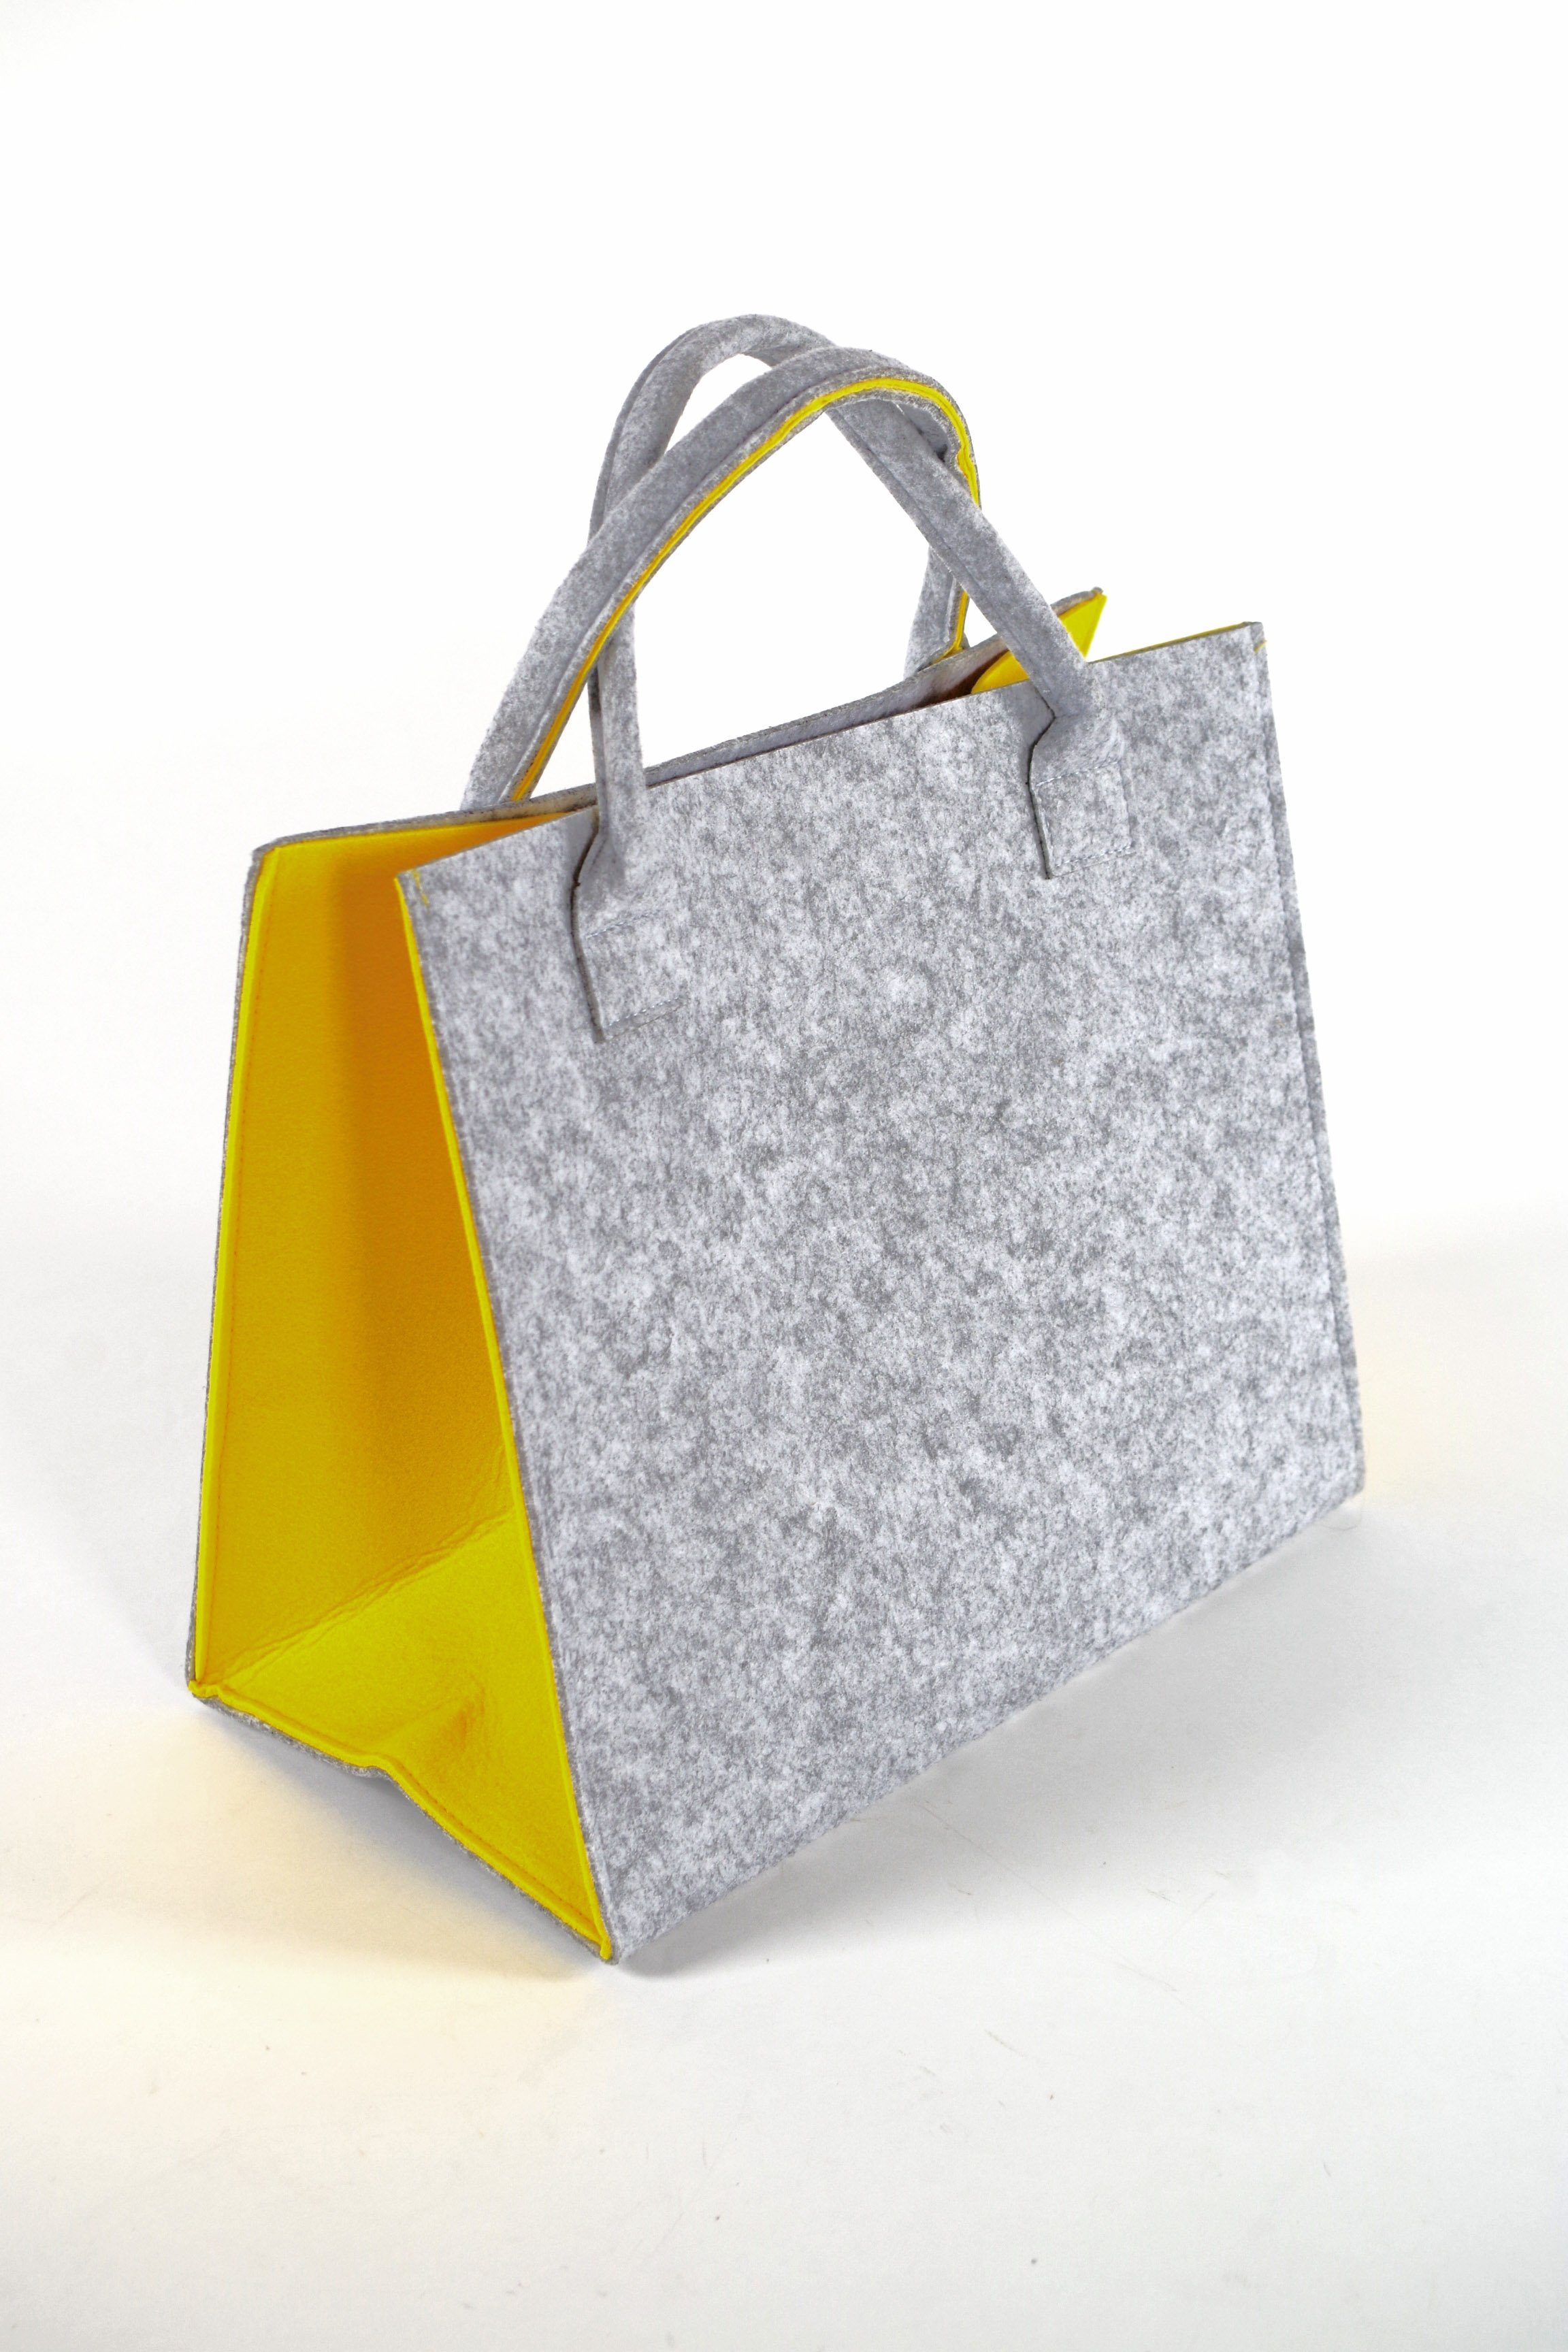 l Kobolo Seiten mit hellgrau gelben Filztasche 20 cm, 35x20x30 Einkaufsshopper